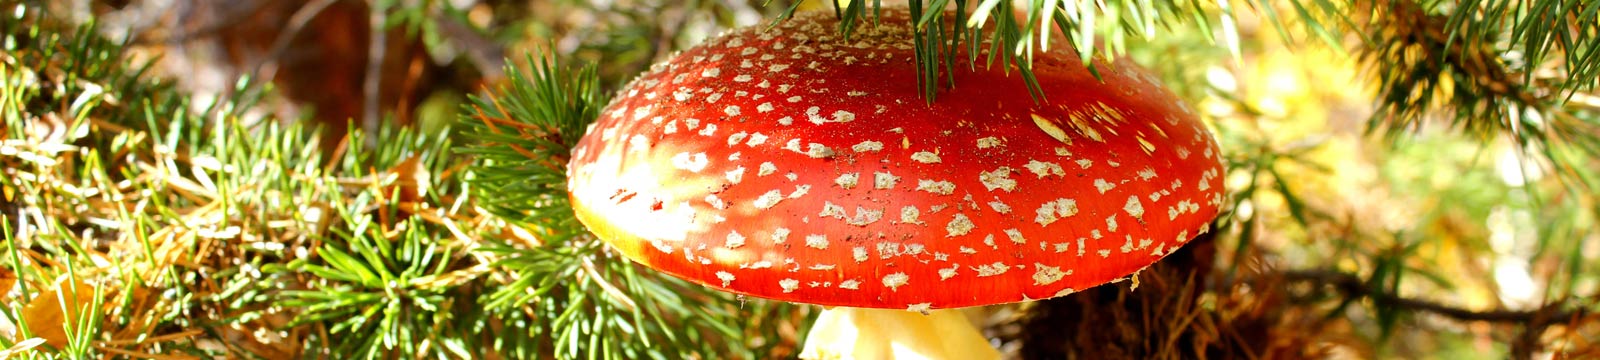 Галлюцинногенные грибы - WayDom.ru